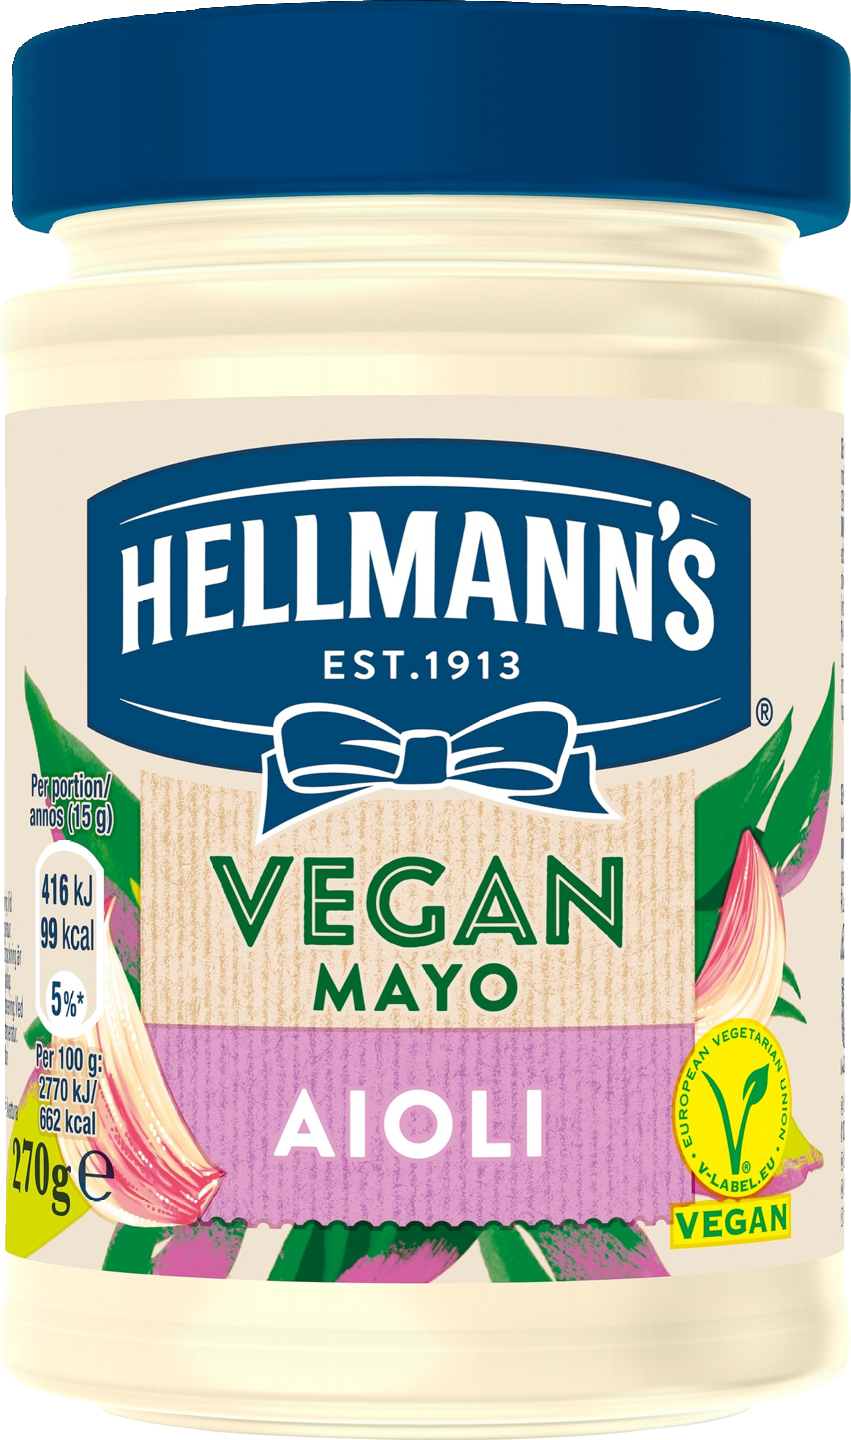 Hellmann's Vegan Majoneesi 270g Aioli